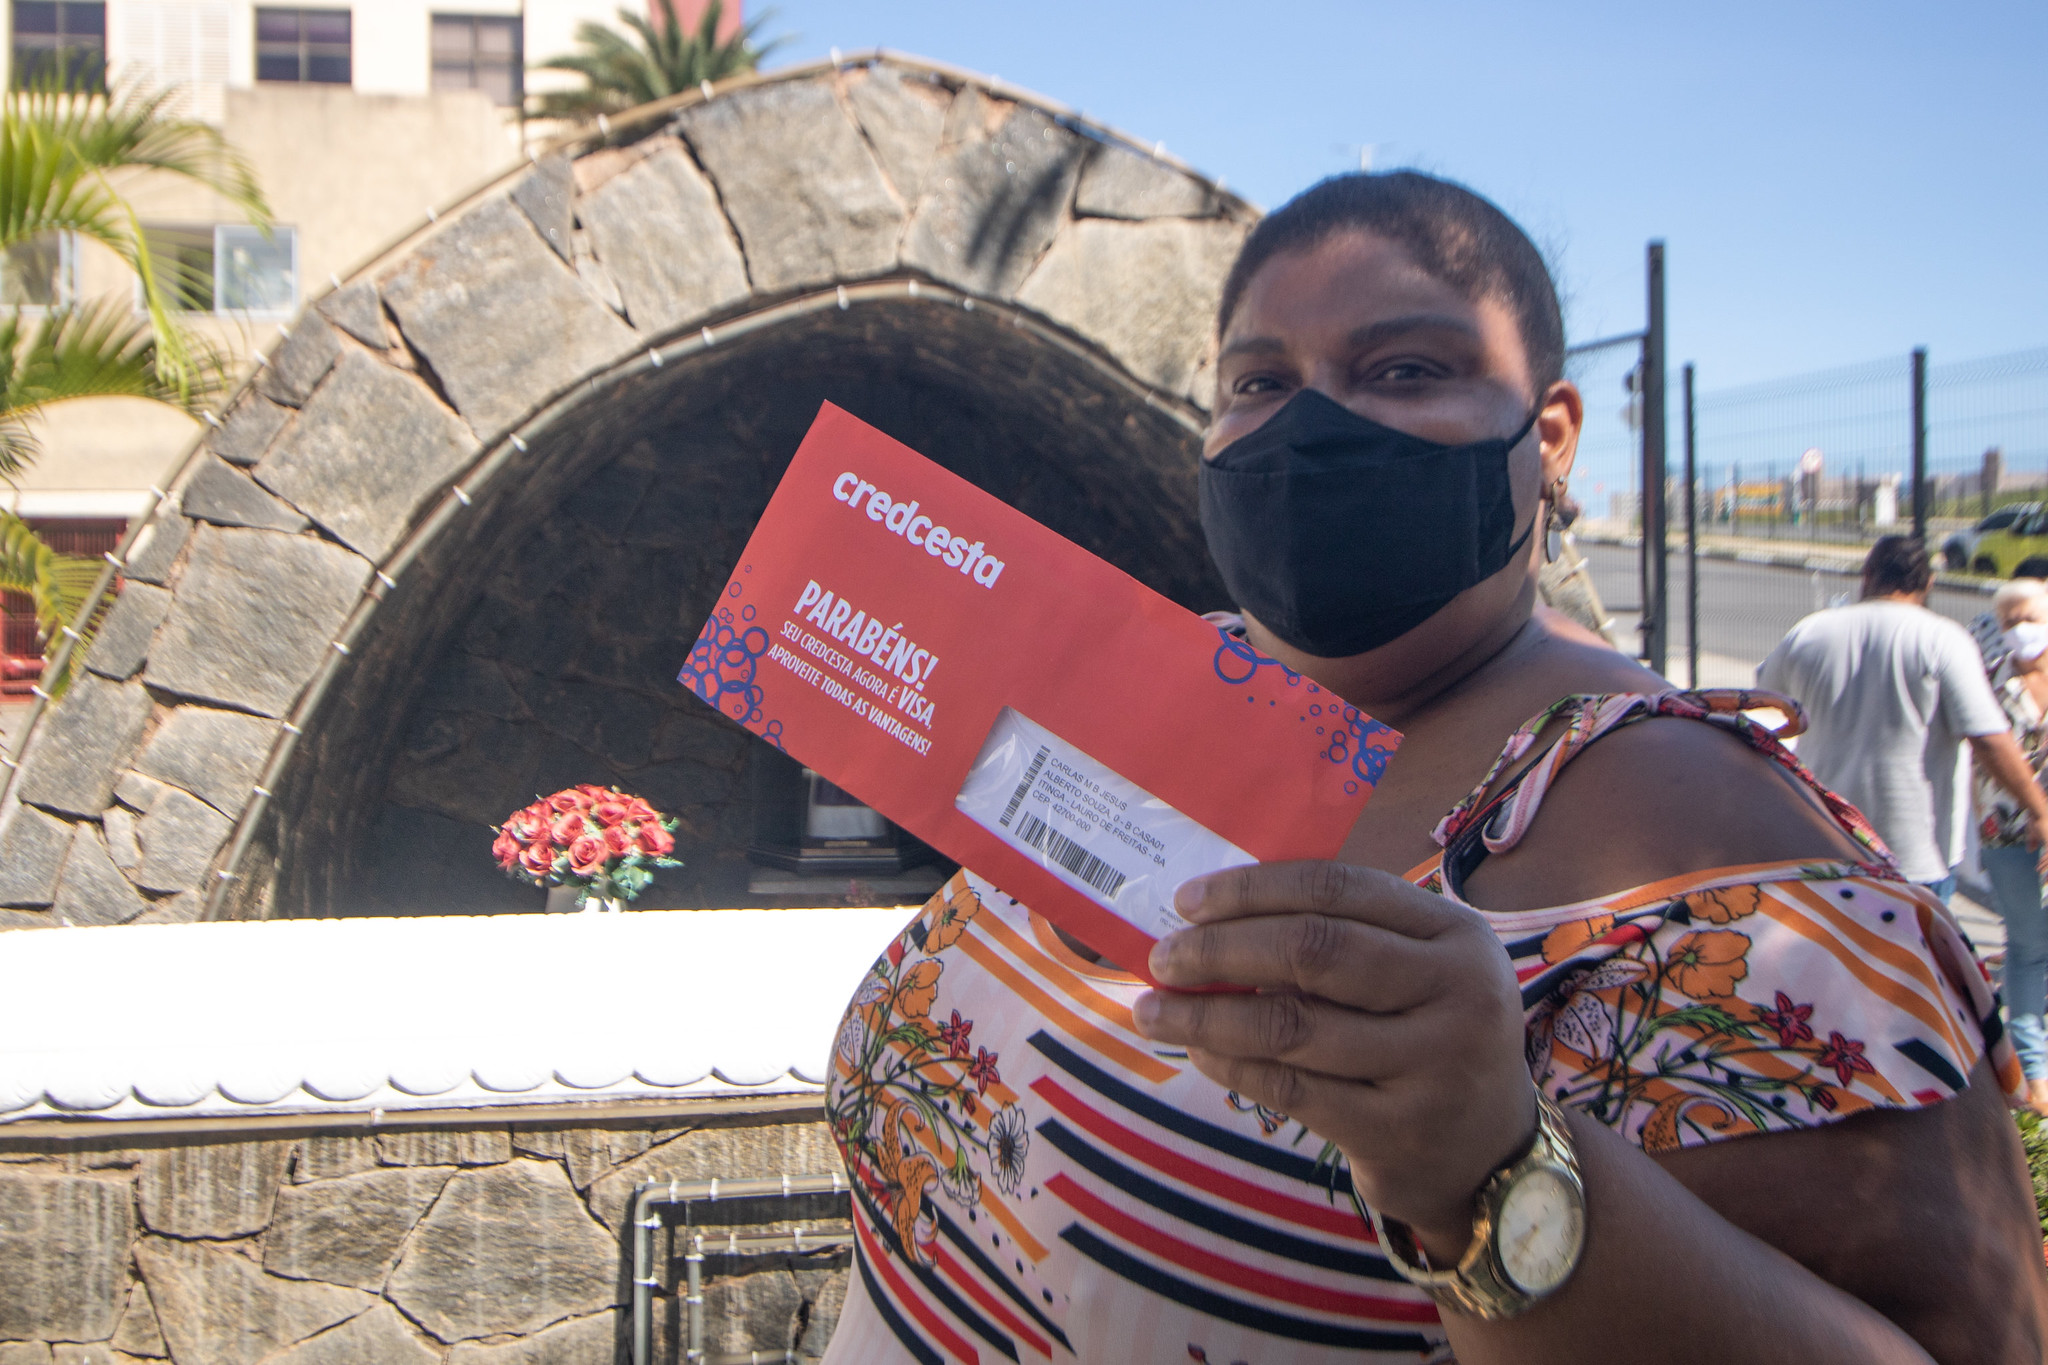 Servidores da Prefeitura come�am a receber o cart�o Credcesta para compras em Lauro de Freitas